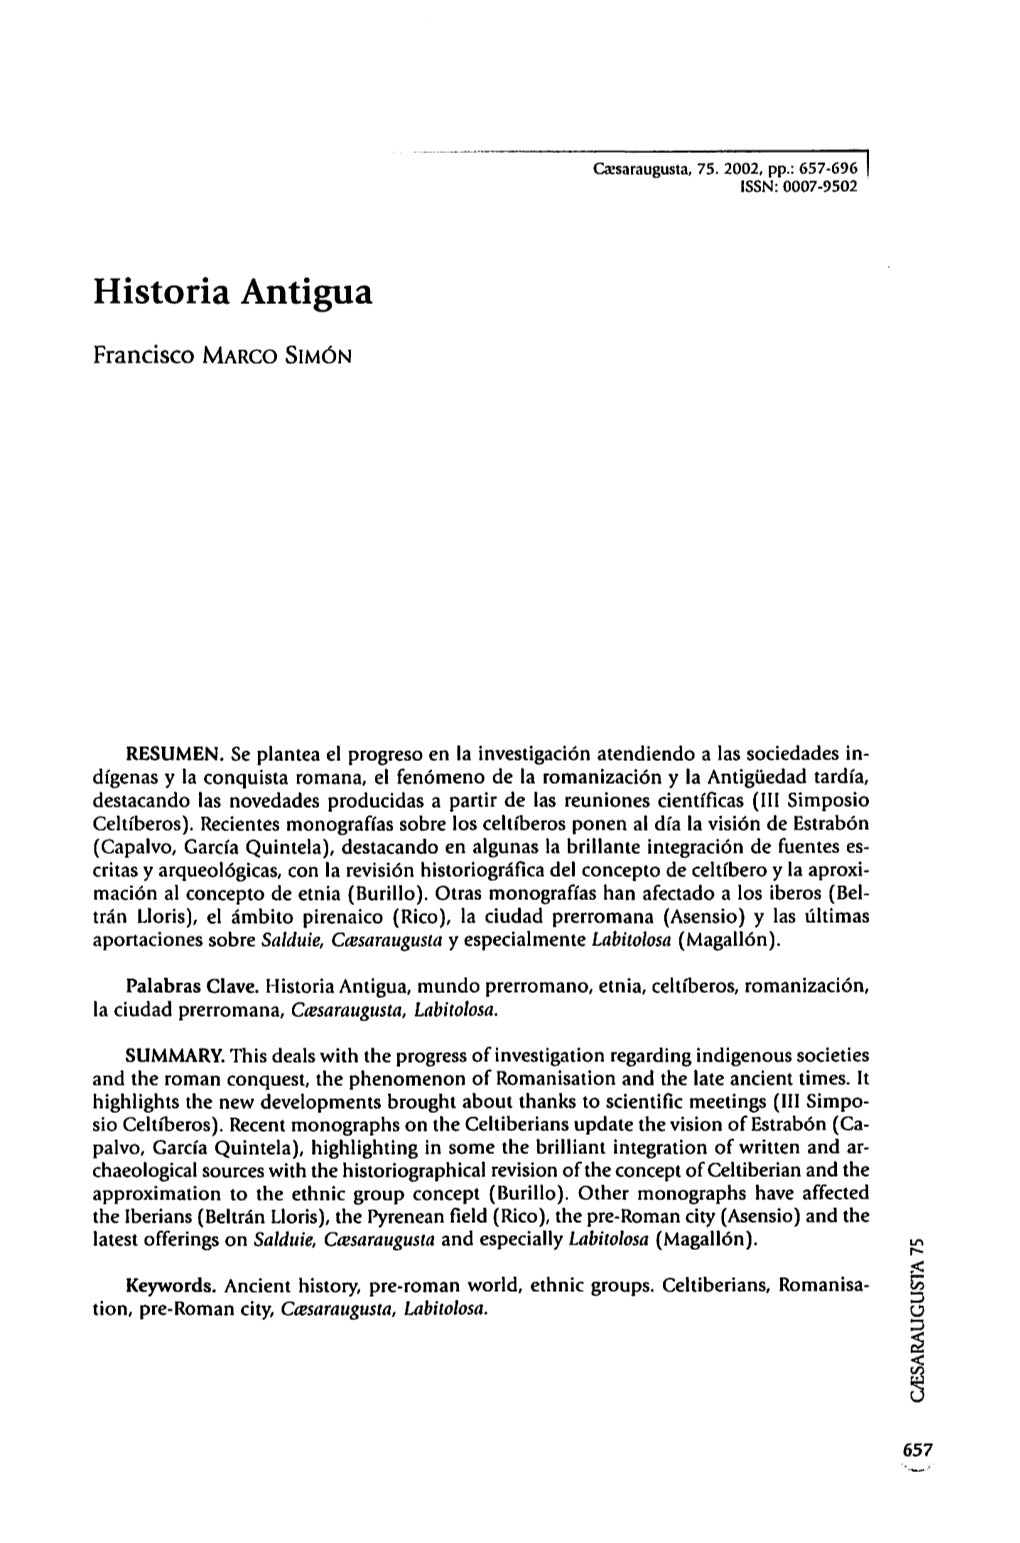 6. Historia Antigua, Por Francisco Marco Simón